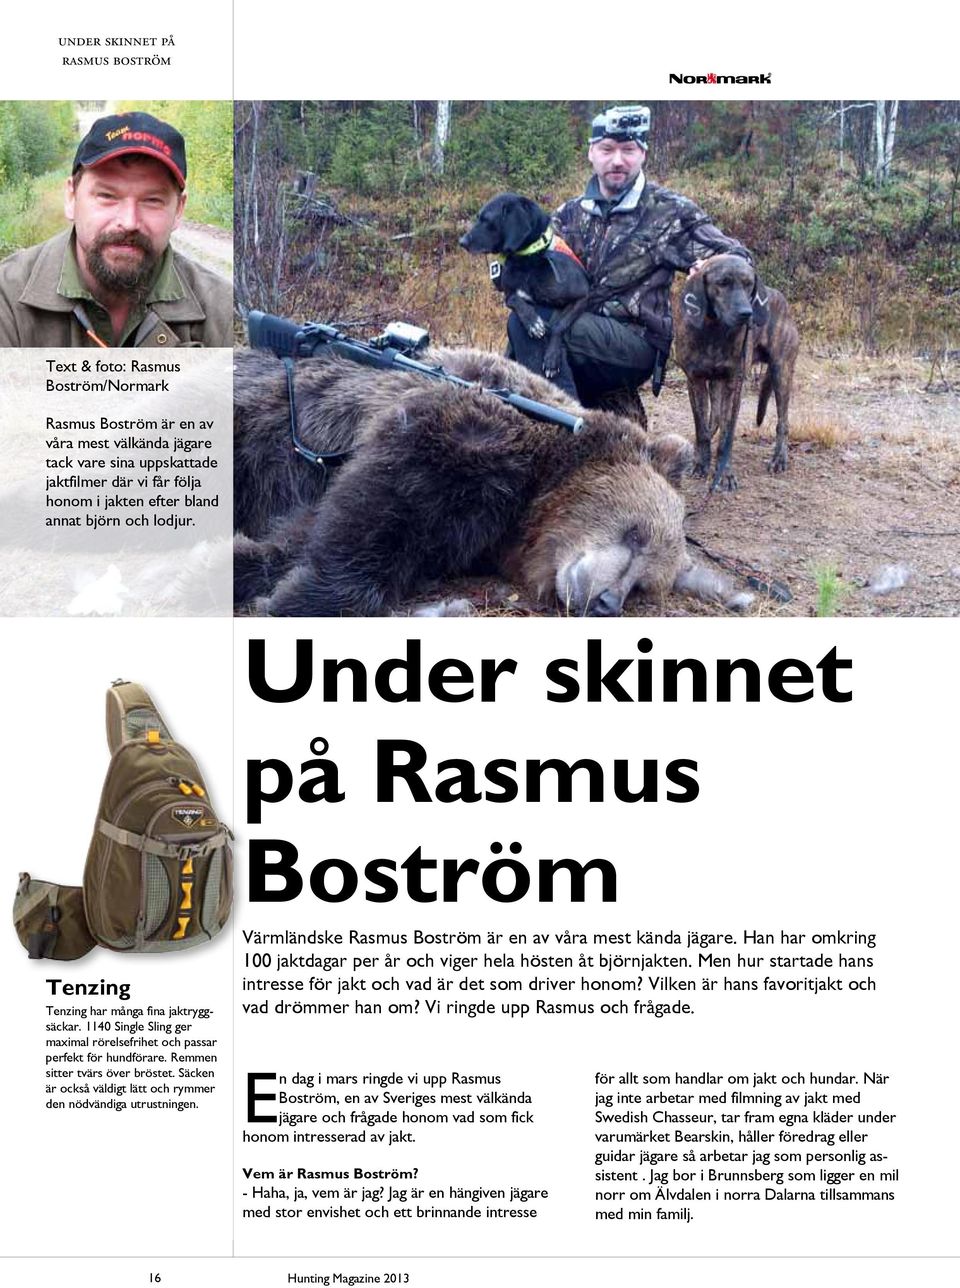 Remmen sitter tvärs över bröstet. Säcken är också väldigt lätt och rymmer den nödvändiga utrustningen. Värmländske Rasmus Boström är en av våra mest kända jägare.